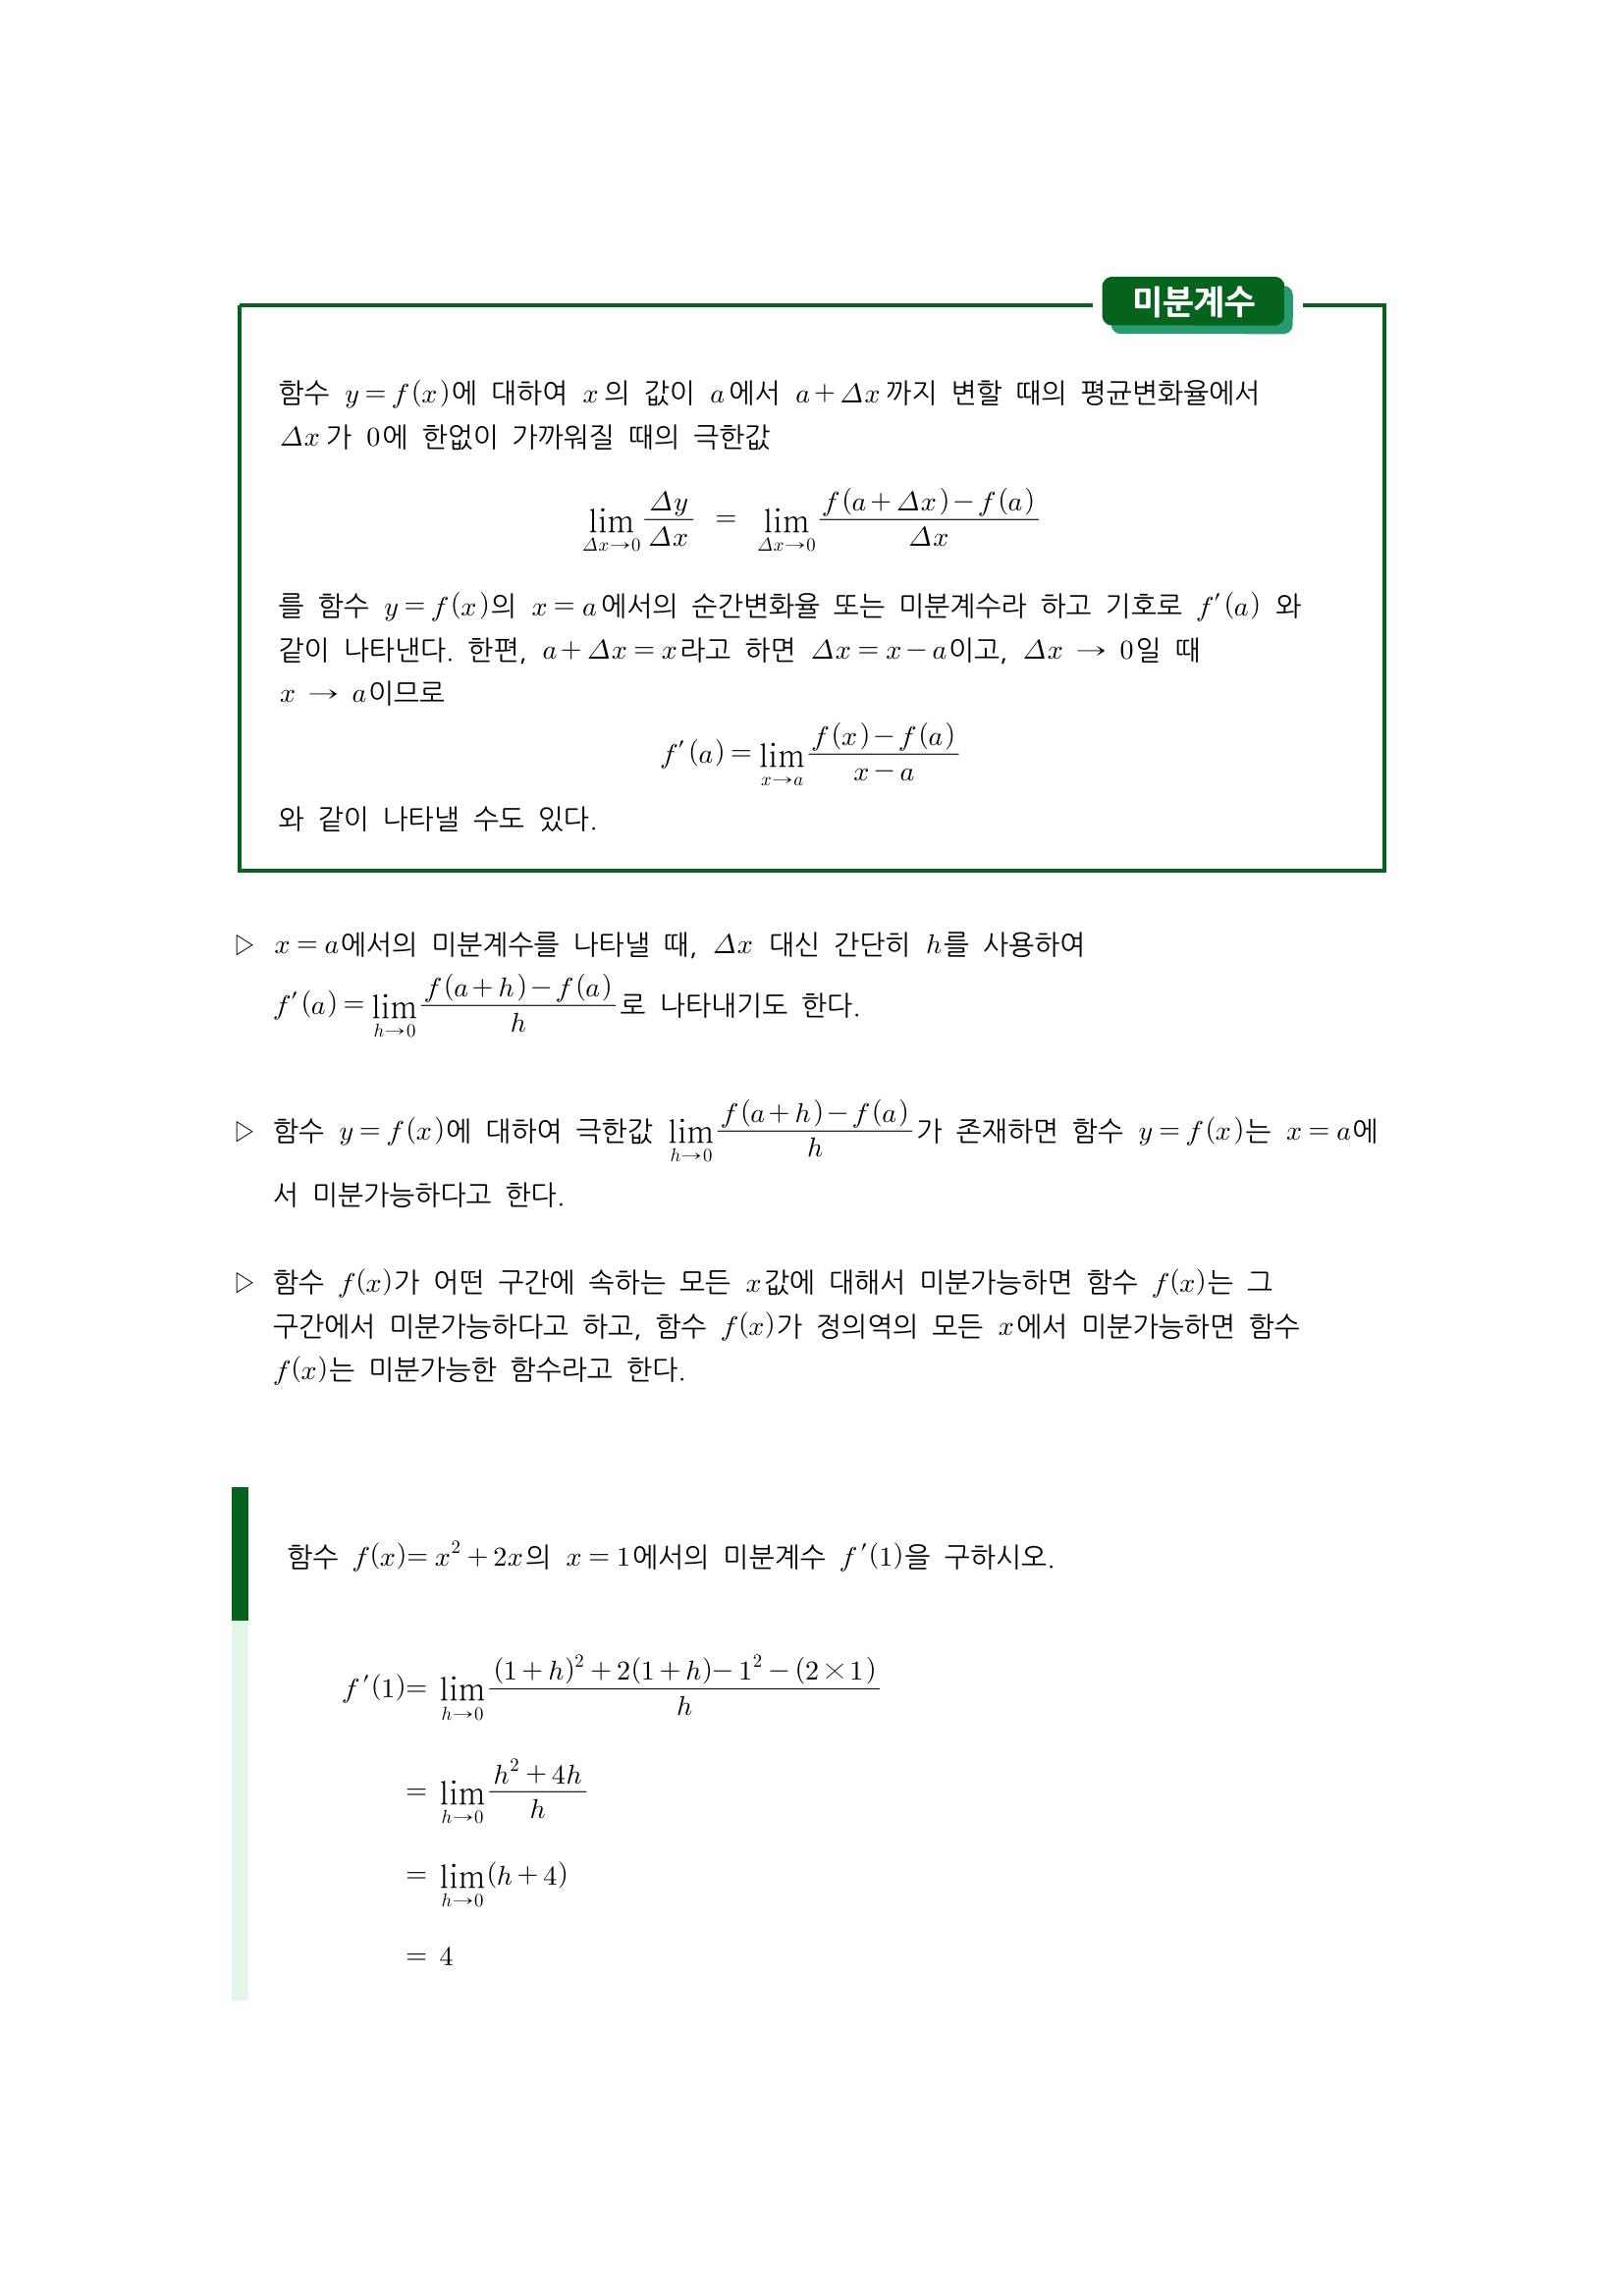 수학 개념 정리/공식 : 미분계수, 평균변화율, 미분계수의 기하학적 의미, 미분가능성과 연속성